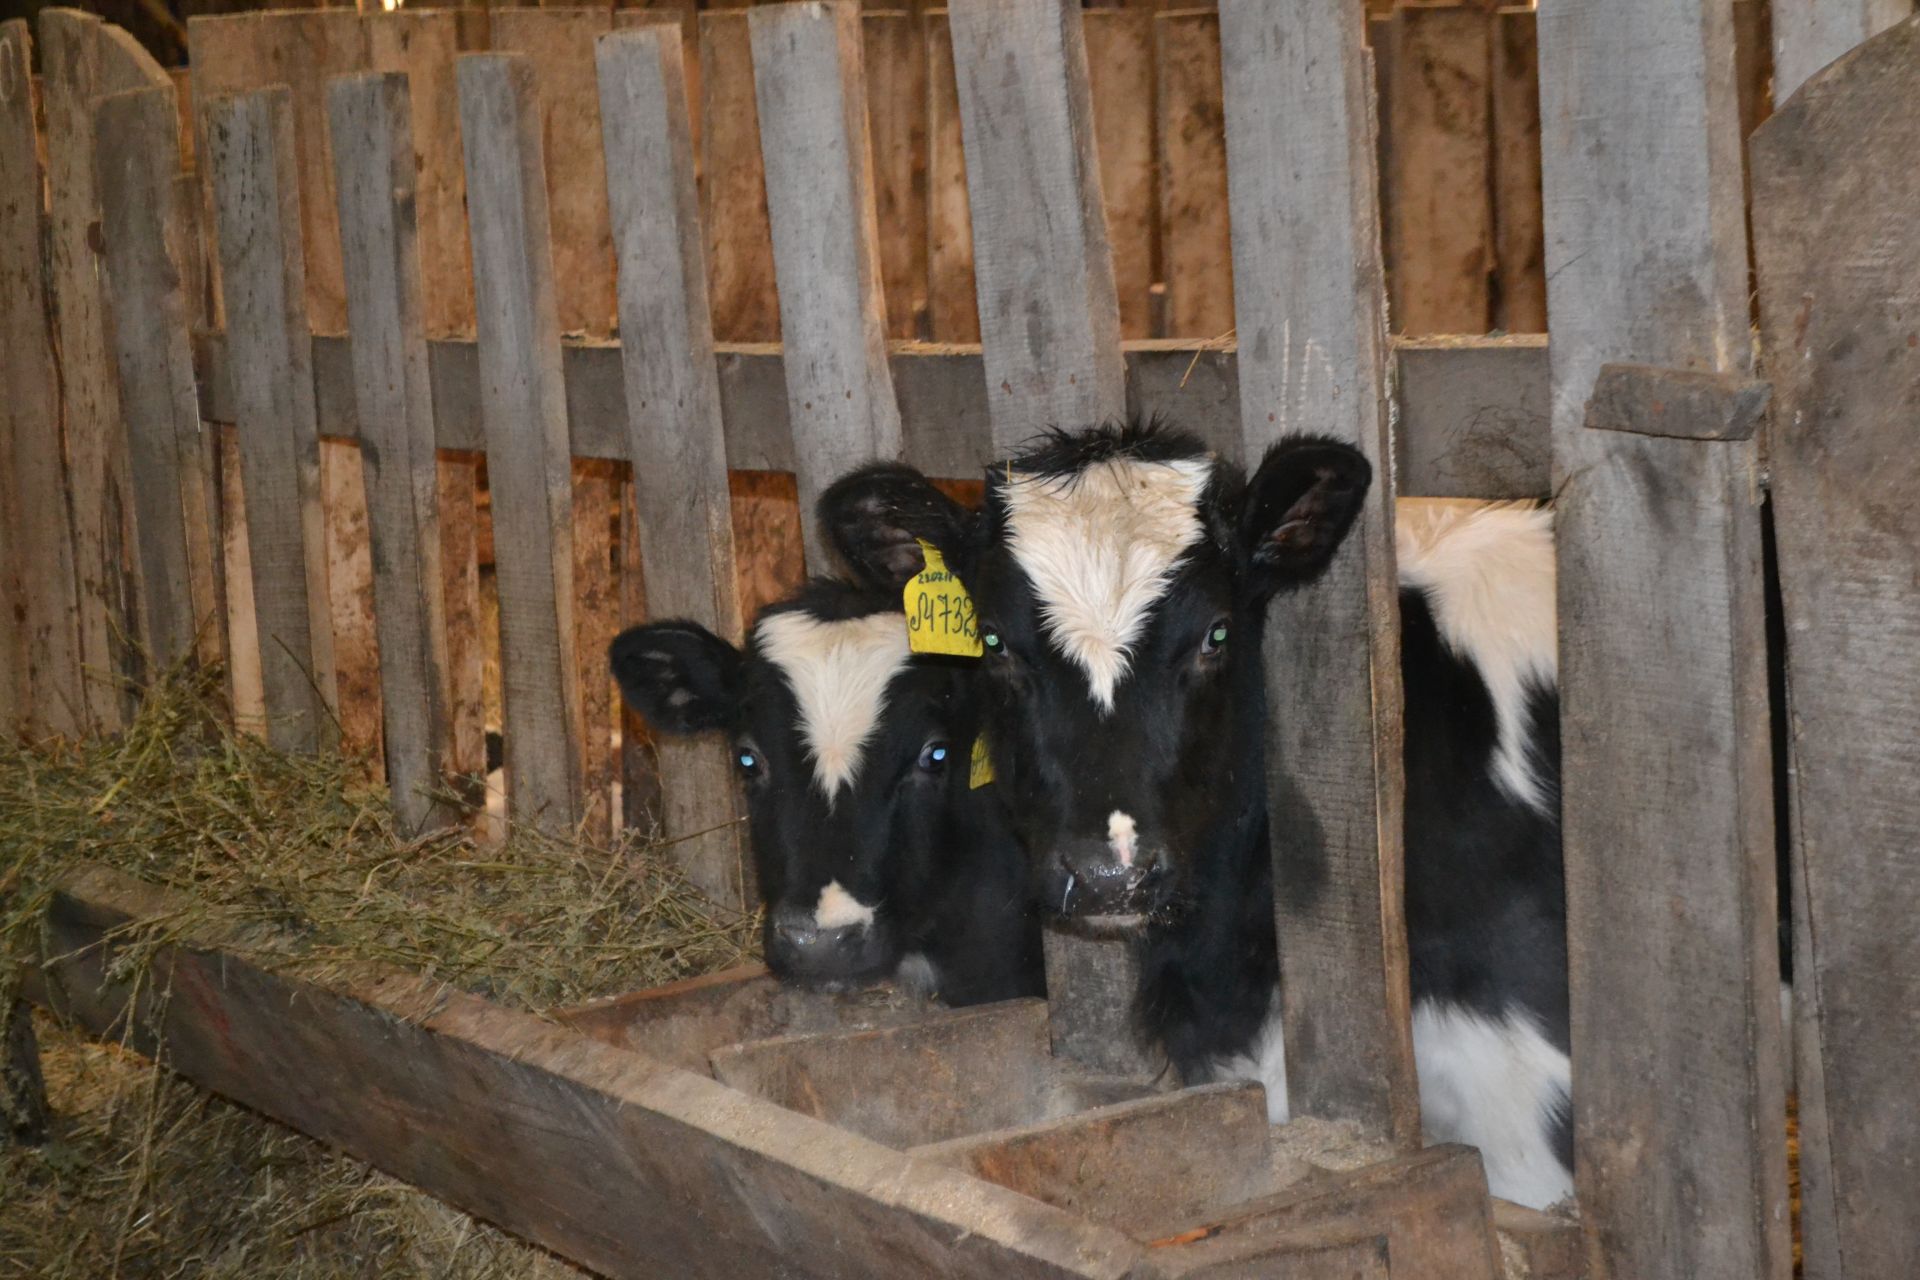 Как увеличить надой молока у коров зимой? На что обращать внимание при составлении рациона? В районе продолжаются семинары, посвященные&nbsp; вопросам животноводства